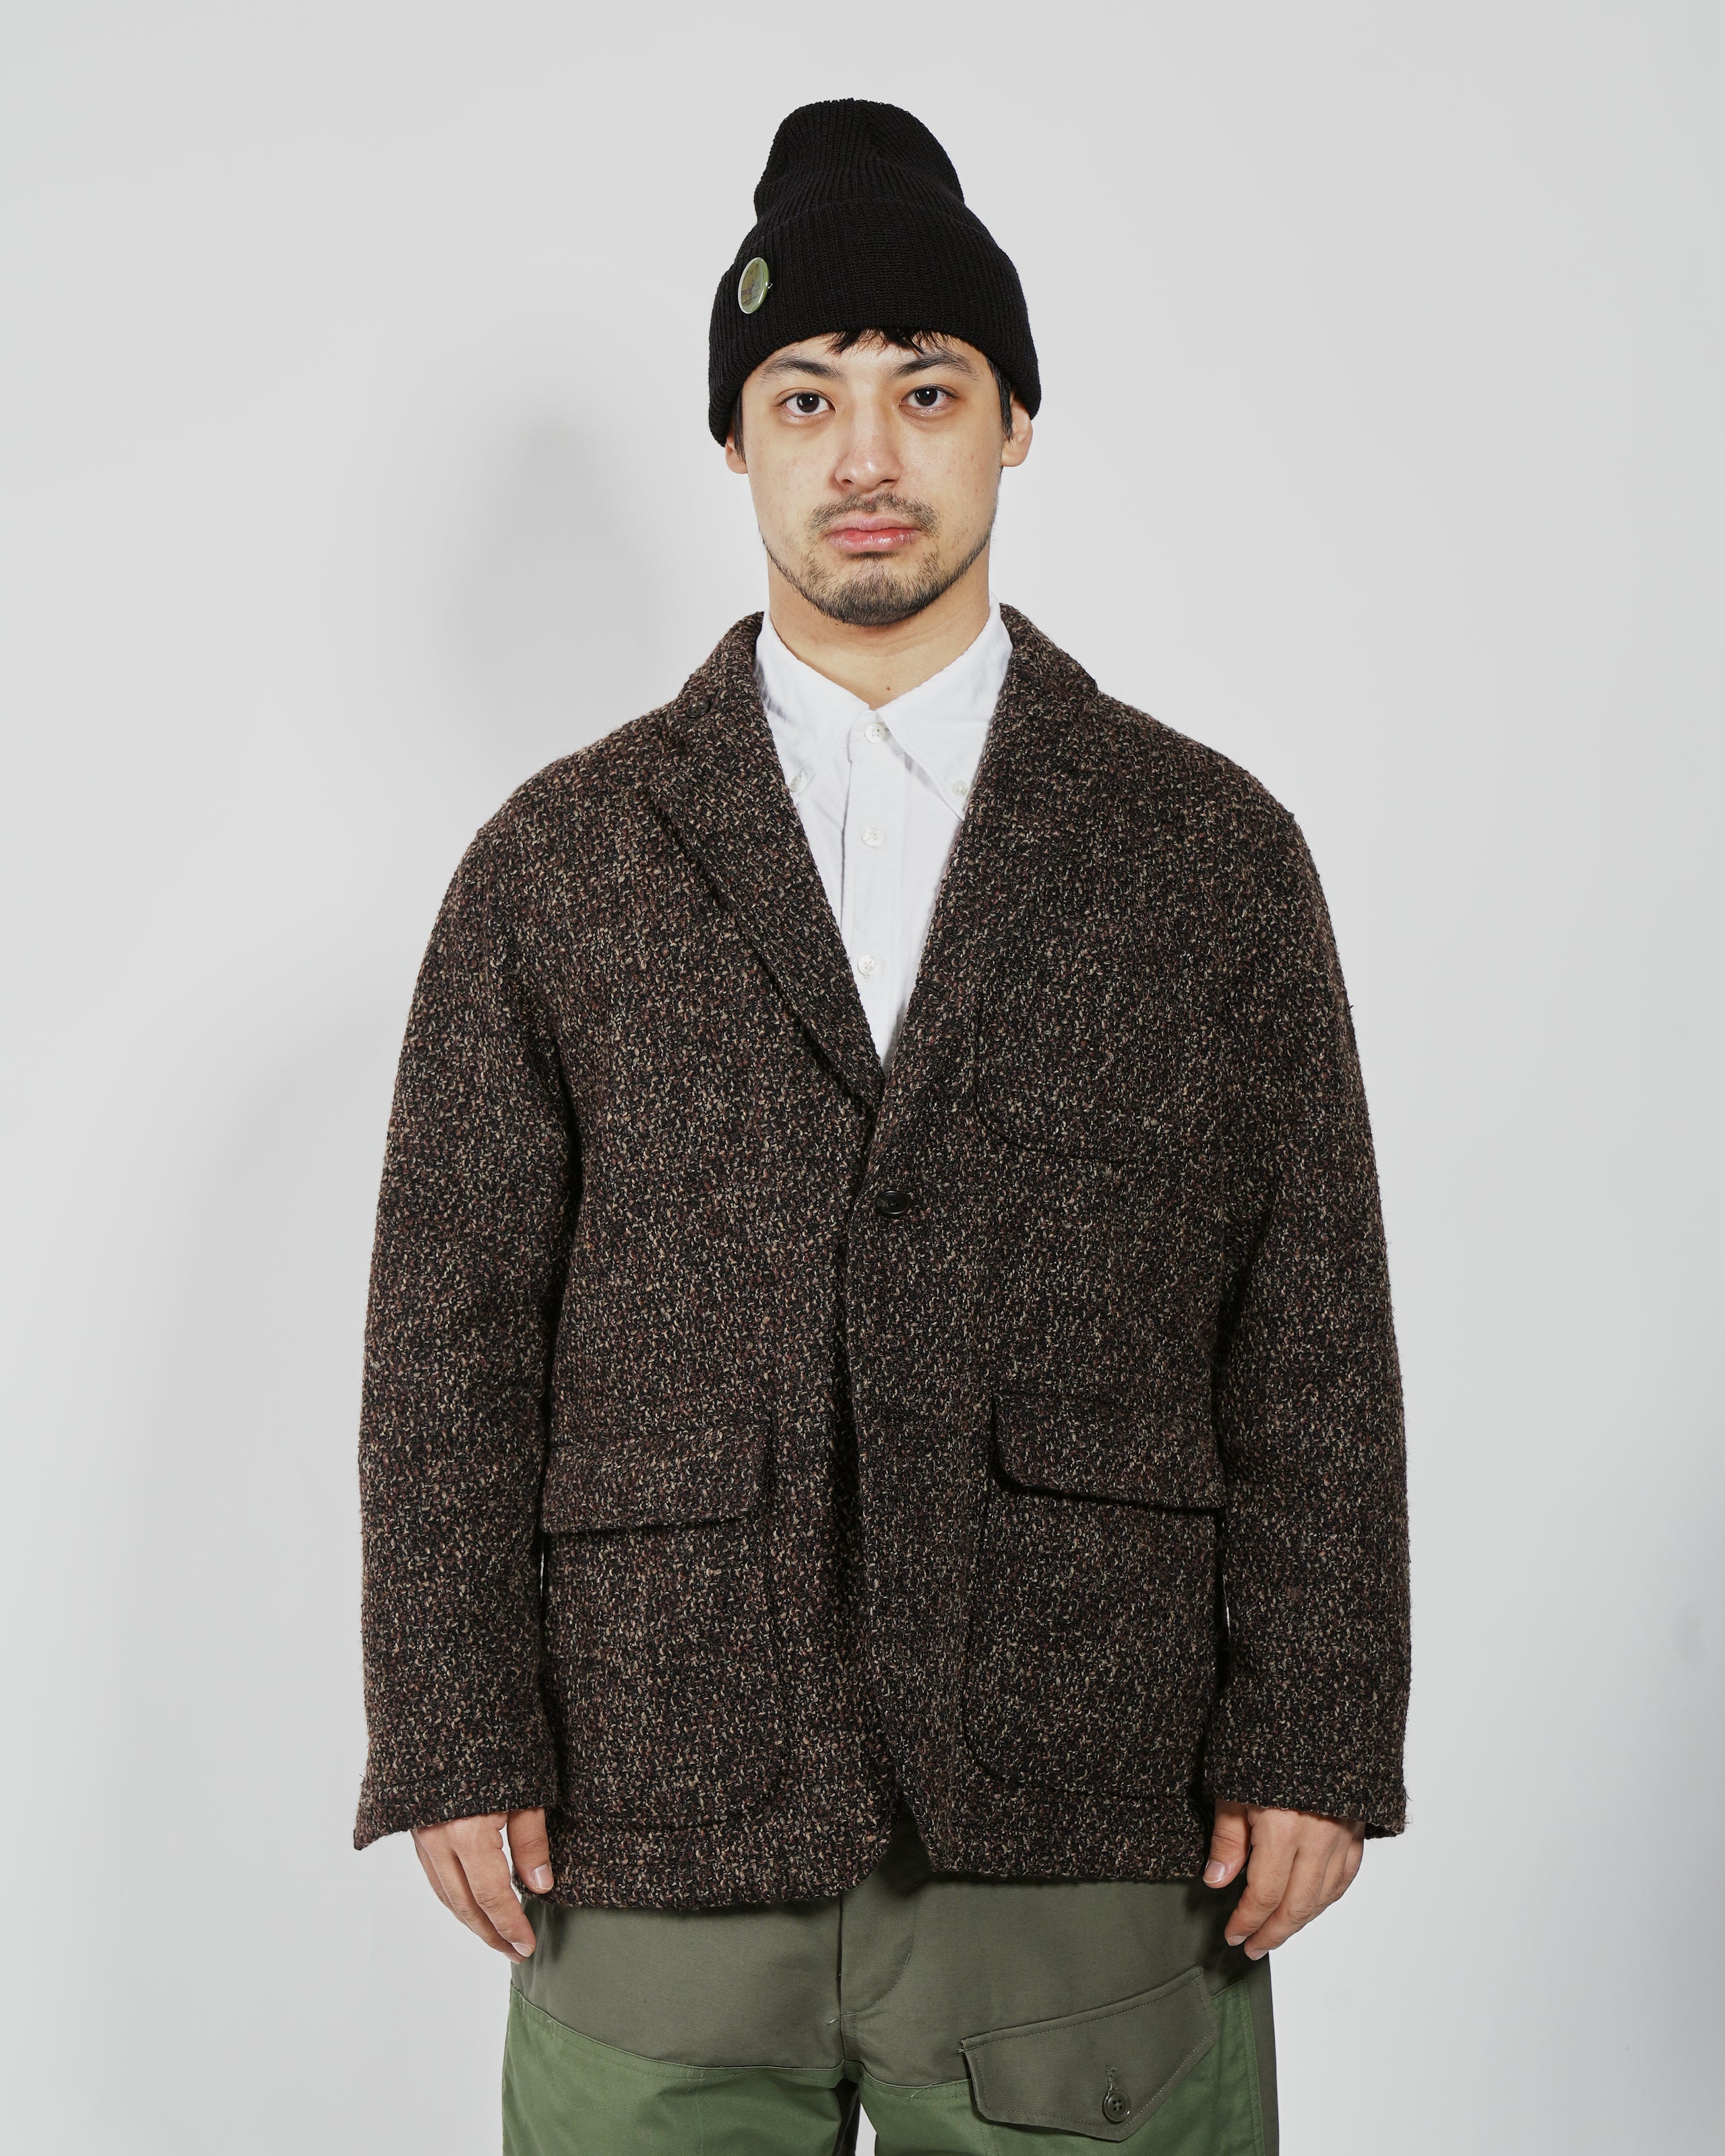 Loiter Jacket - Dk. Brown Polyester Wool Tweed Boucle